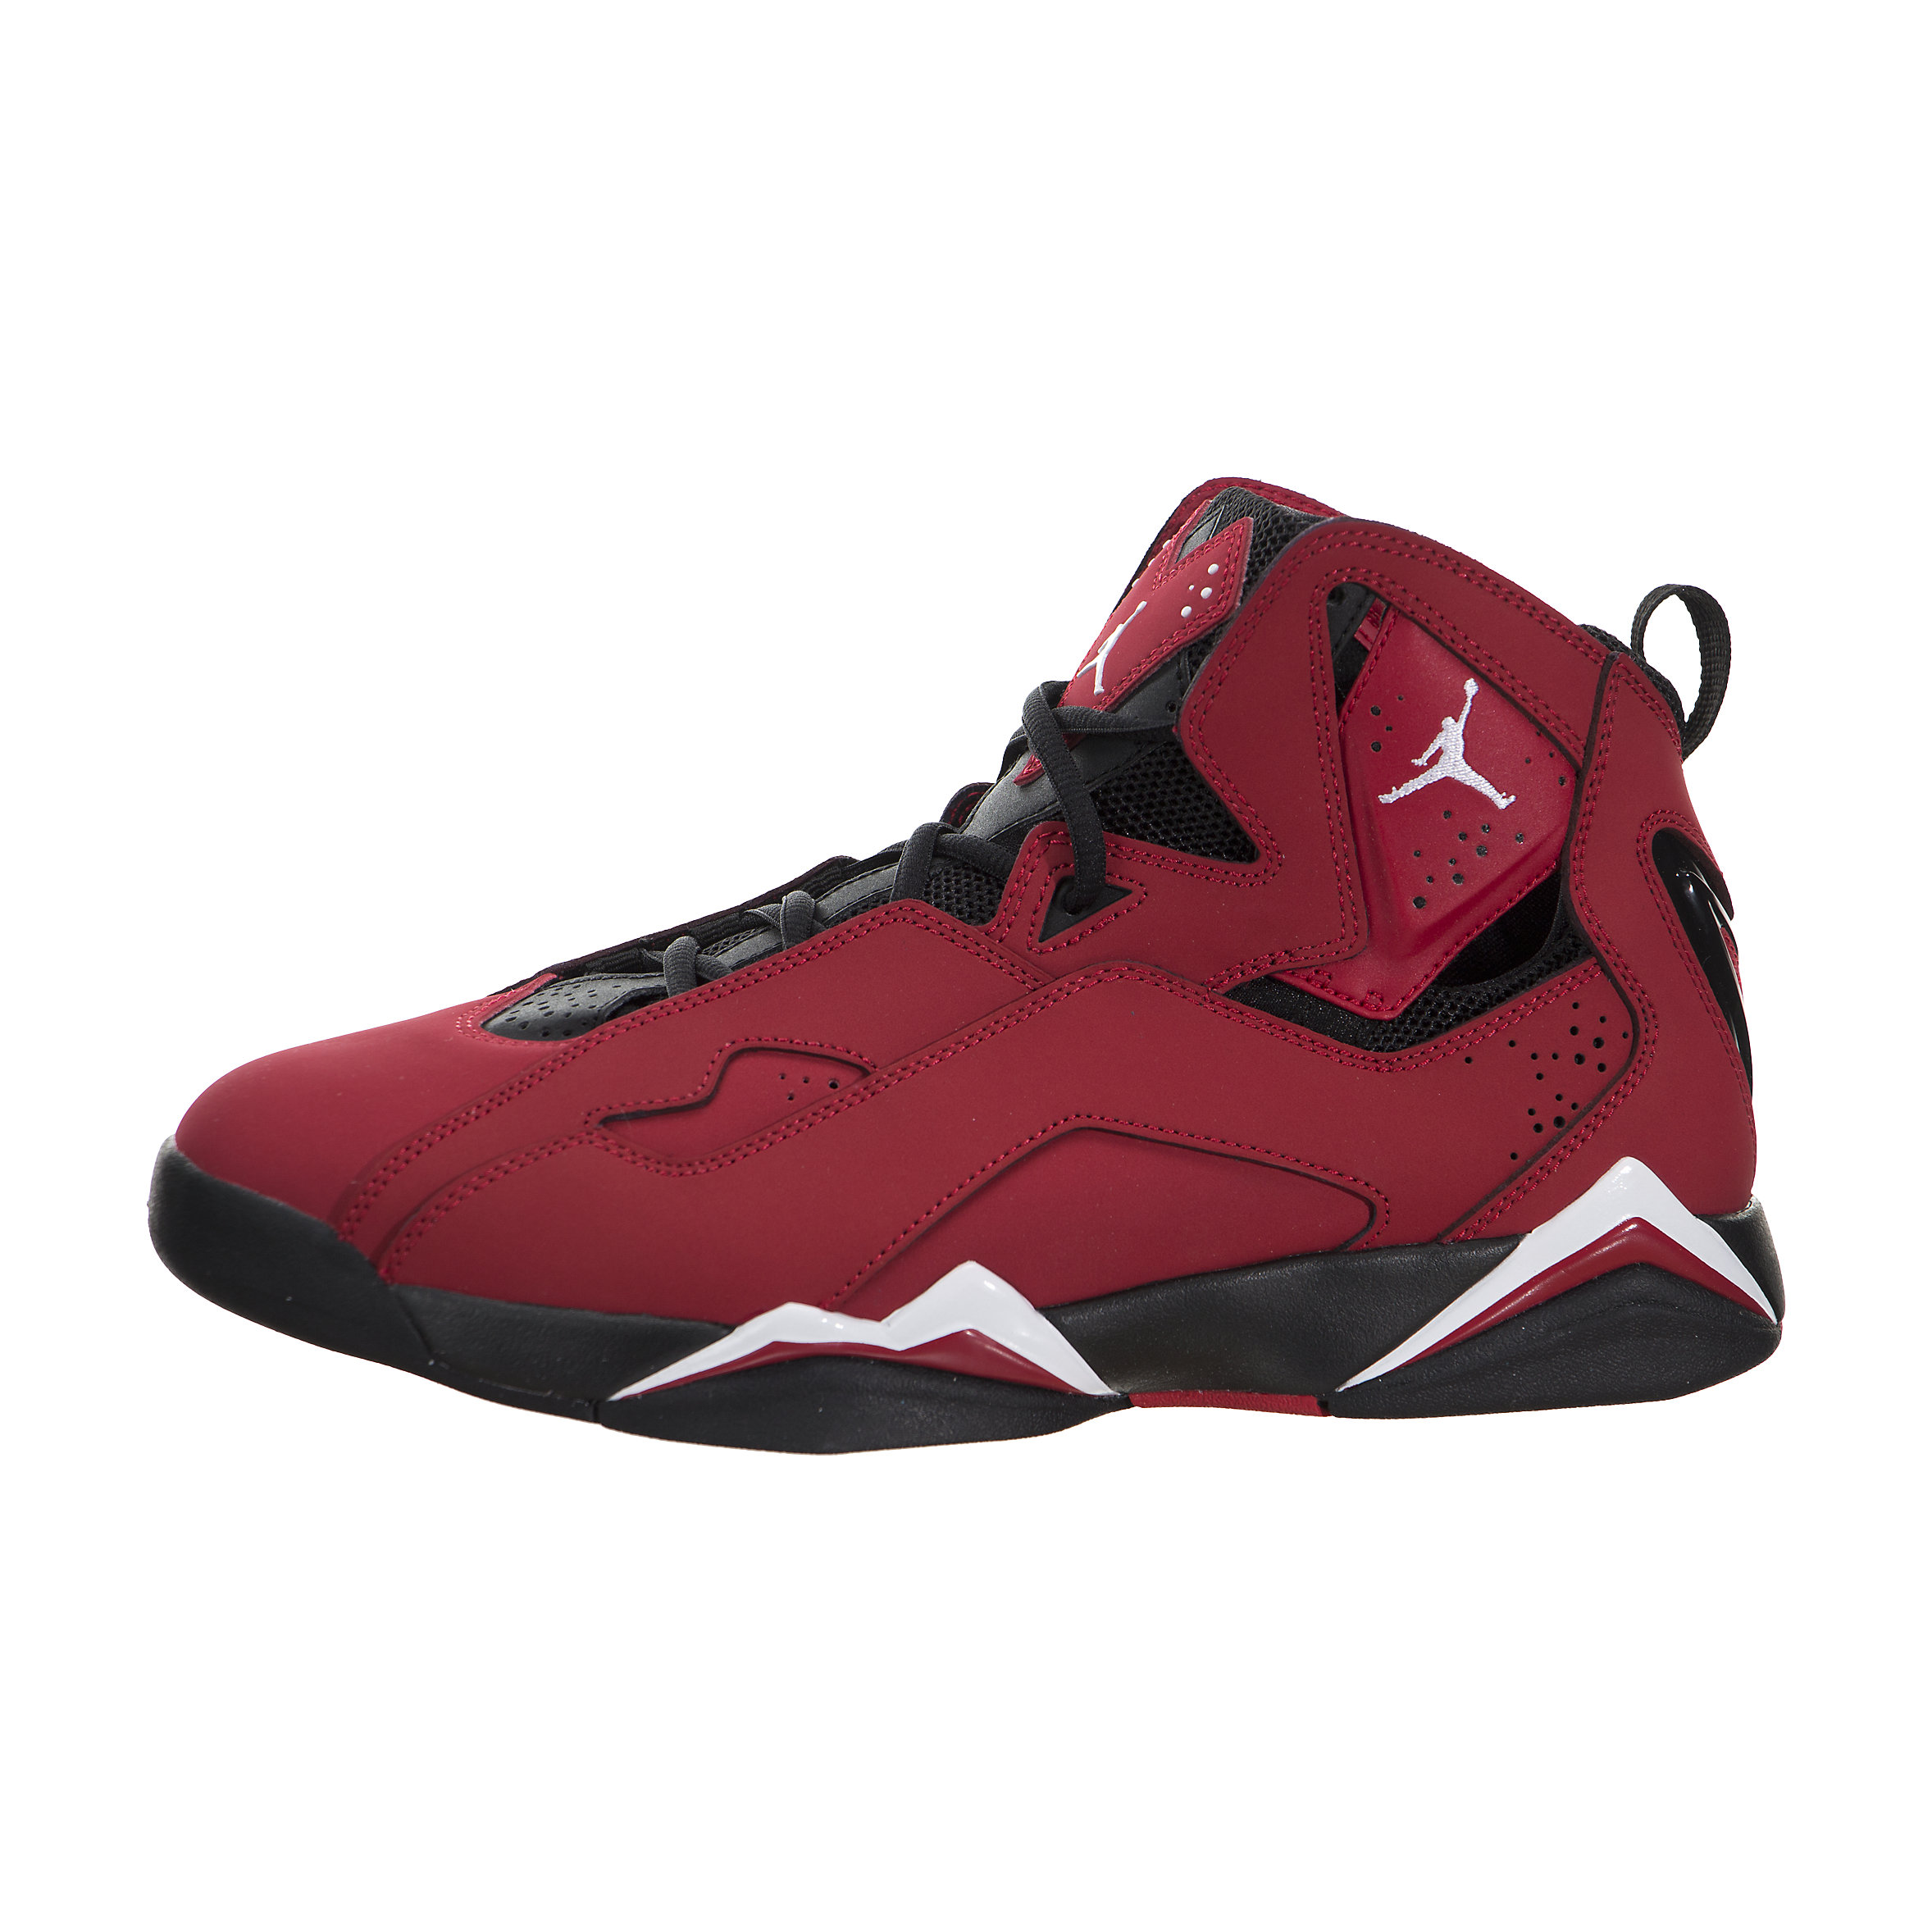 Air Jordan True Flight - $139.99 | Sneakerhead.com - 342964-610